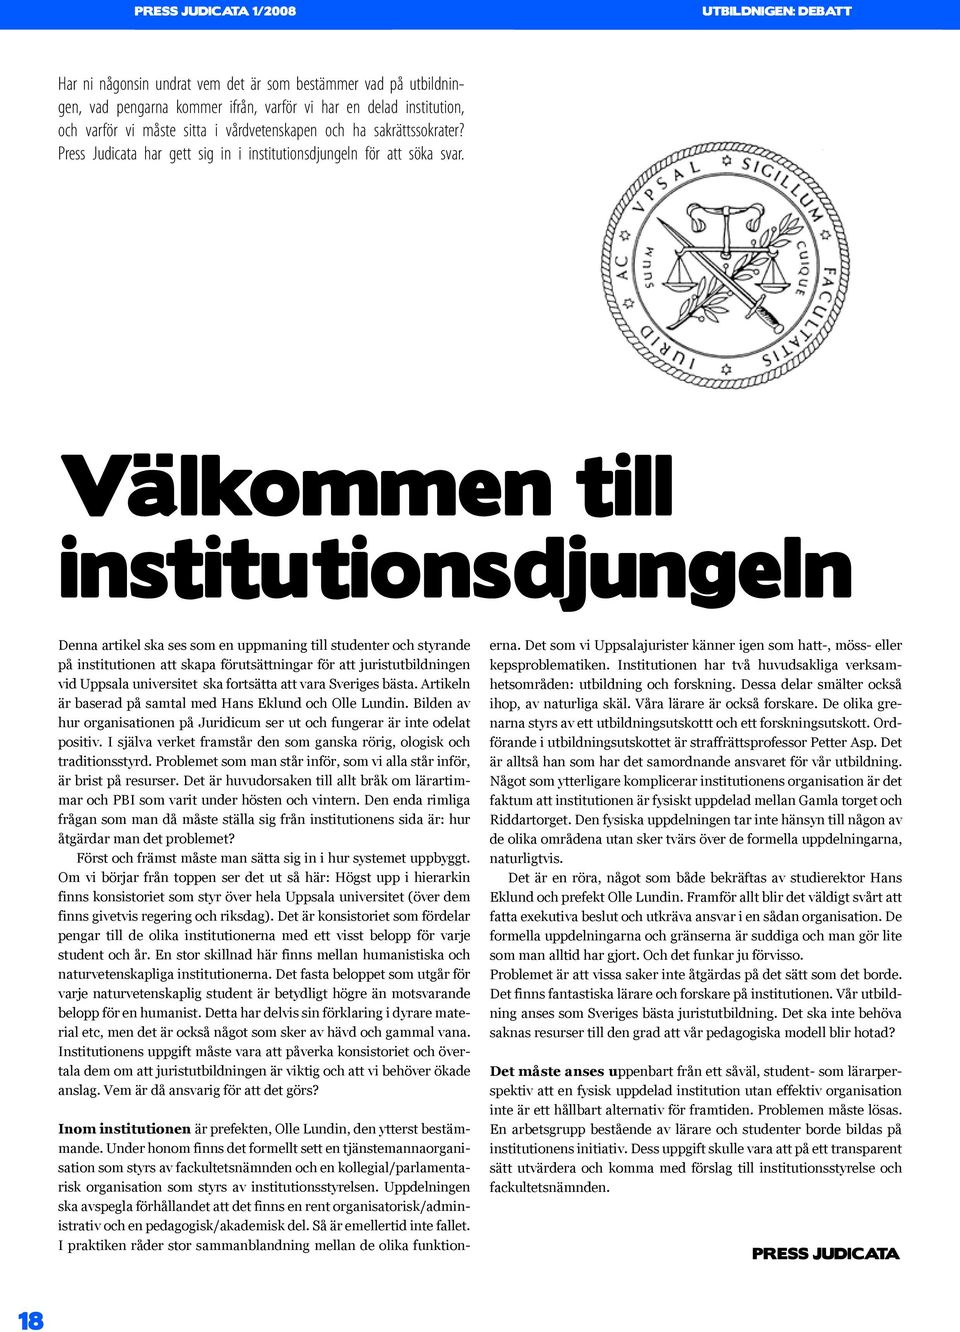 Välkommen till institutionsdjungeln Denna artikel ska ses som en uppmaning till studenter och styrande på institutionen att skapa förutsättningar för att juristutbildningen vid Uppsala universitet